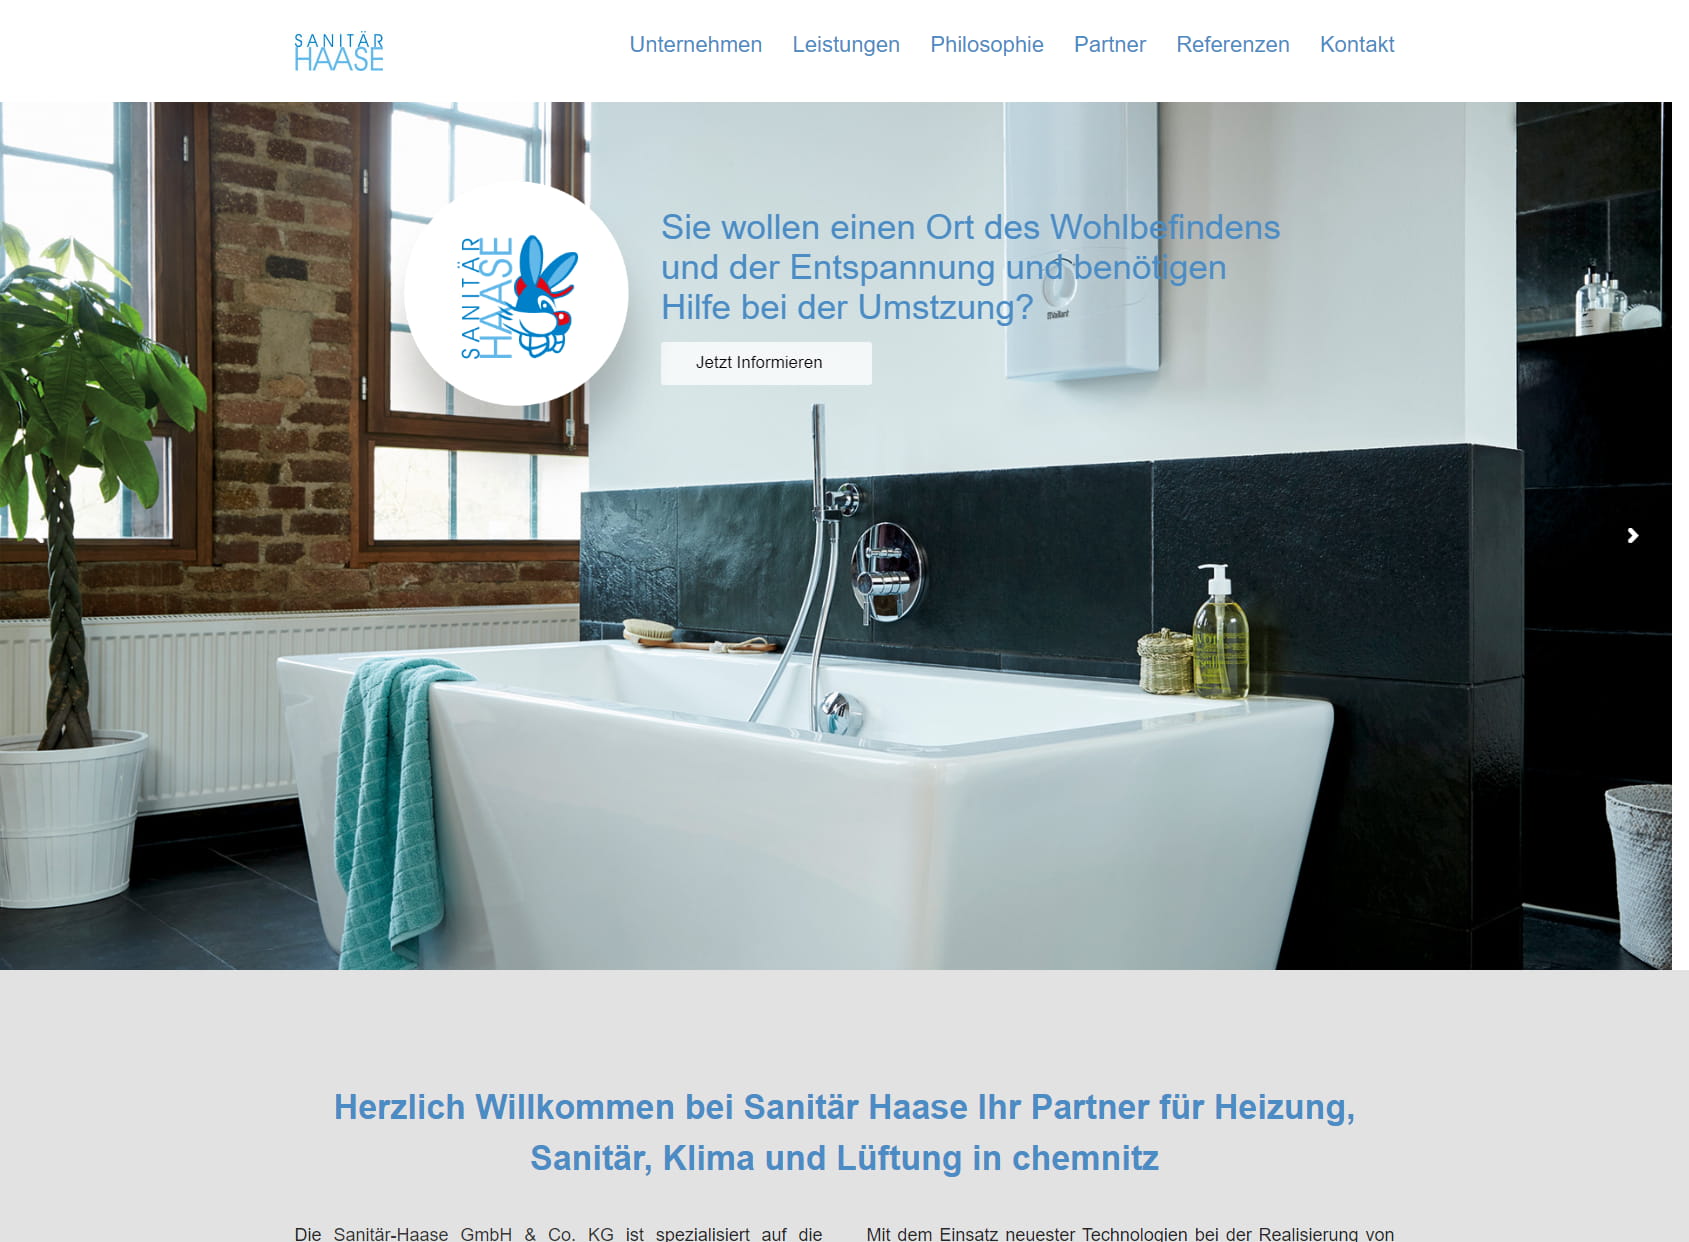 Sanitär-Haase GmbH & Co. KG